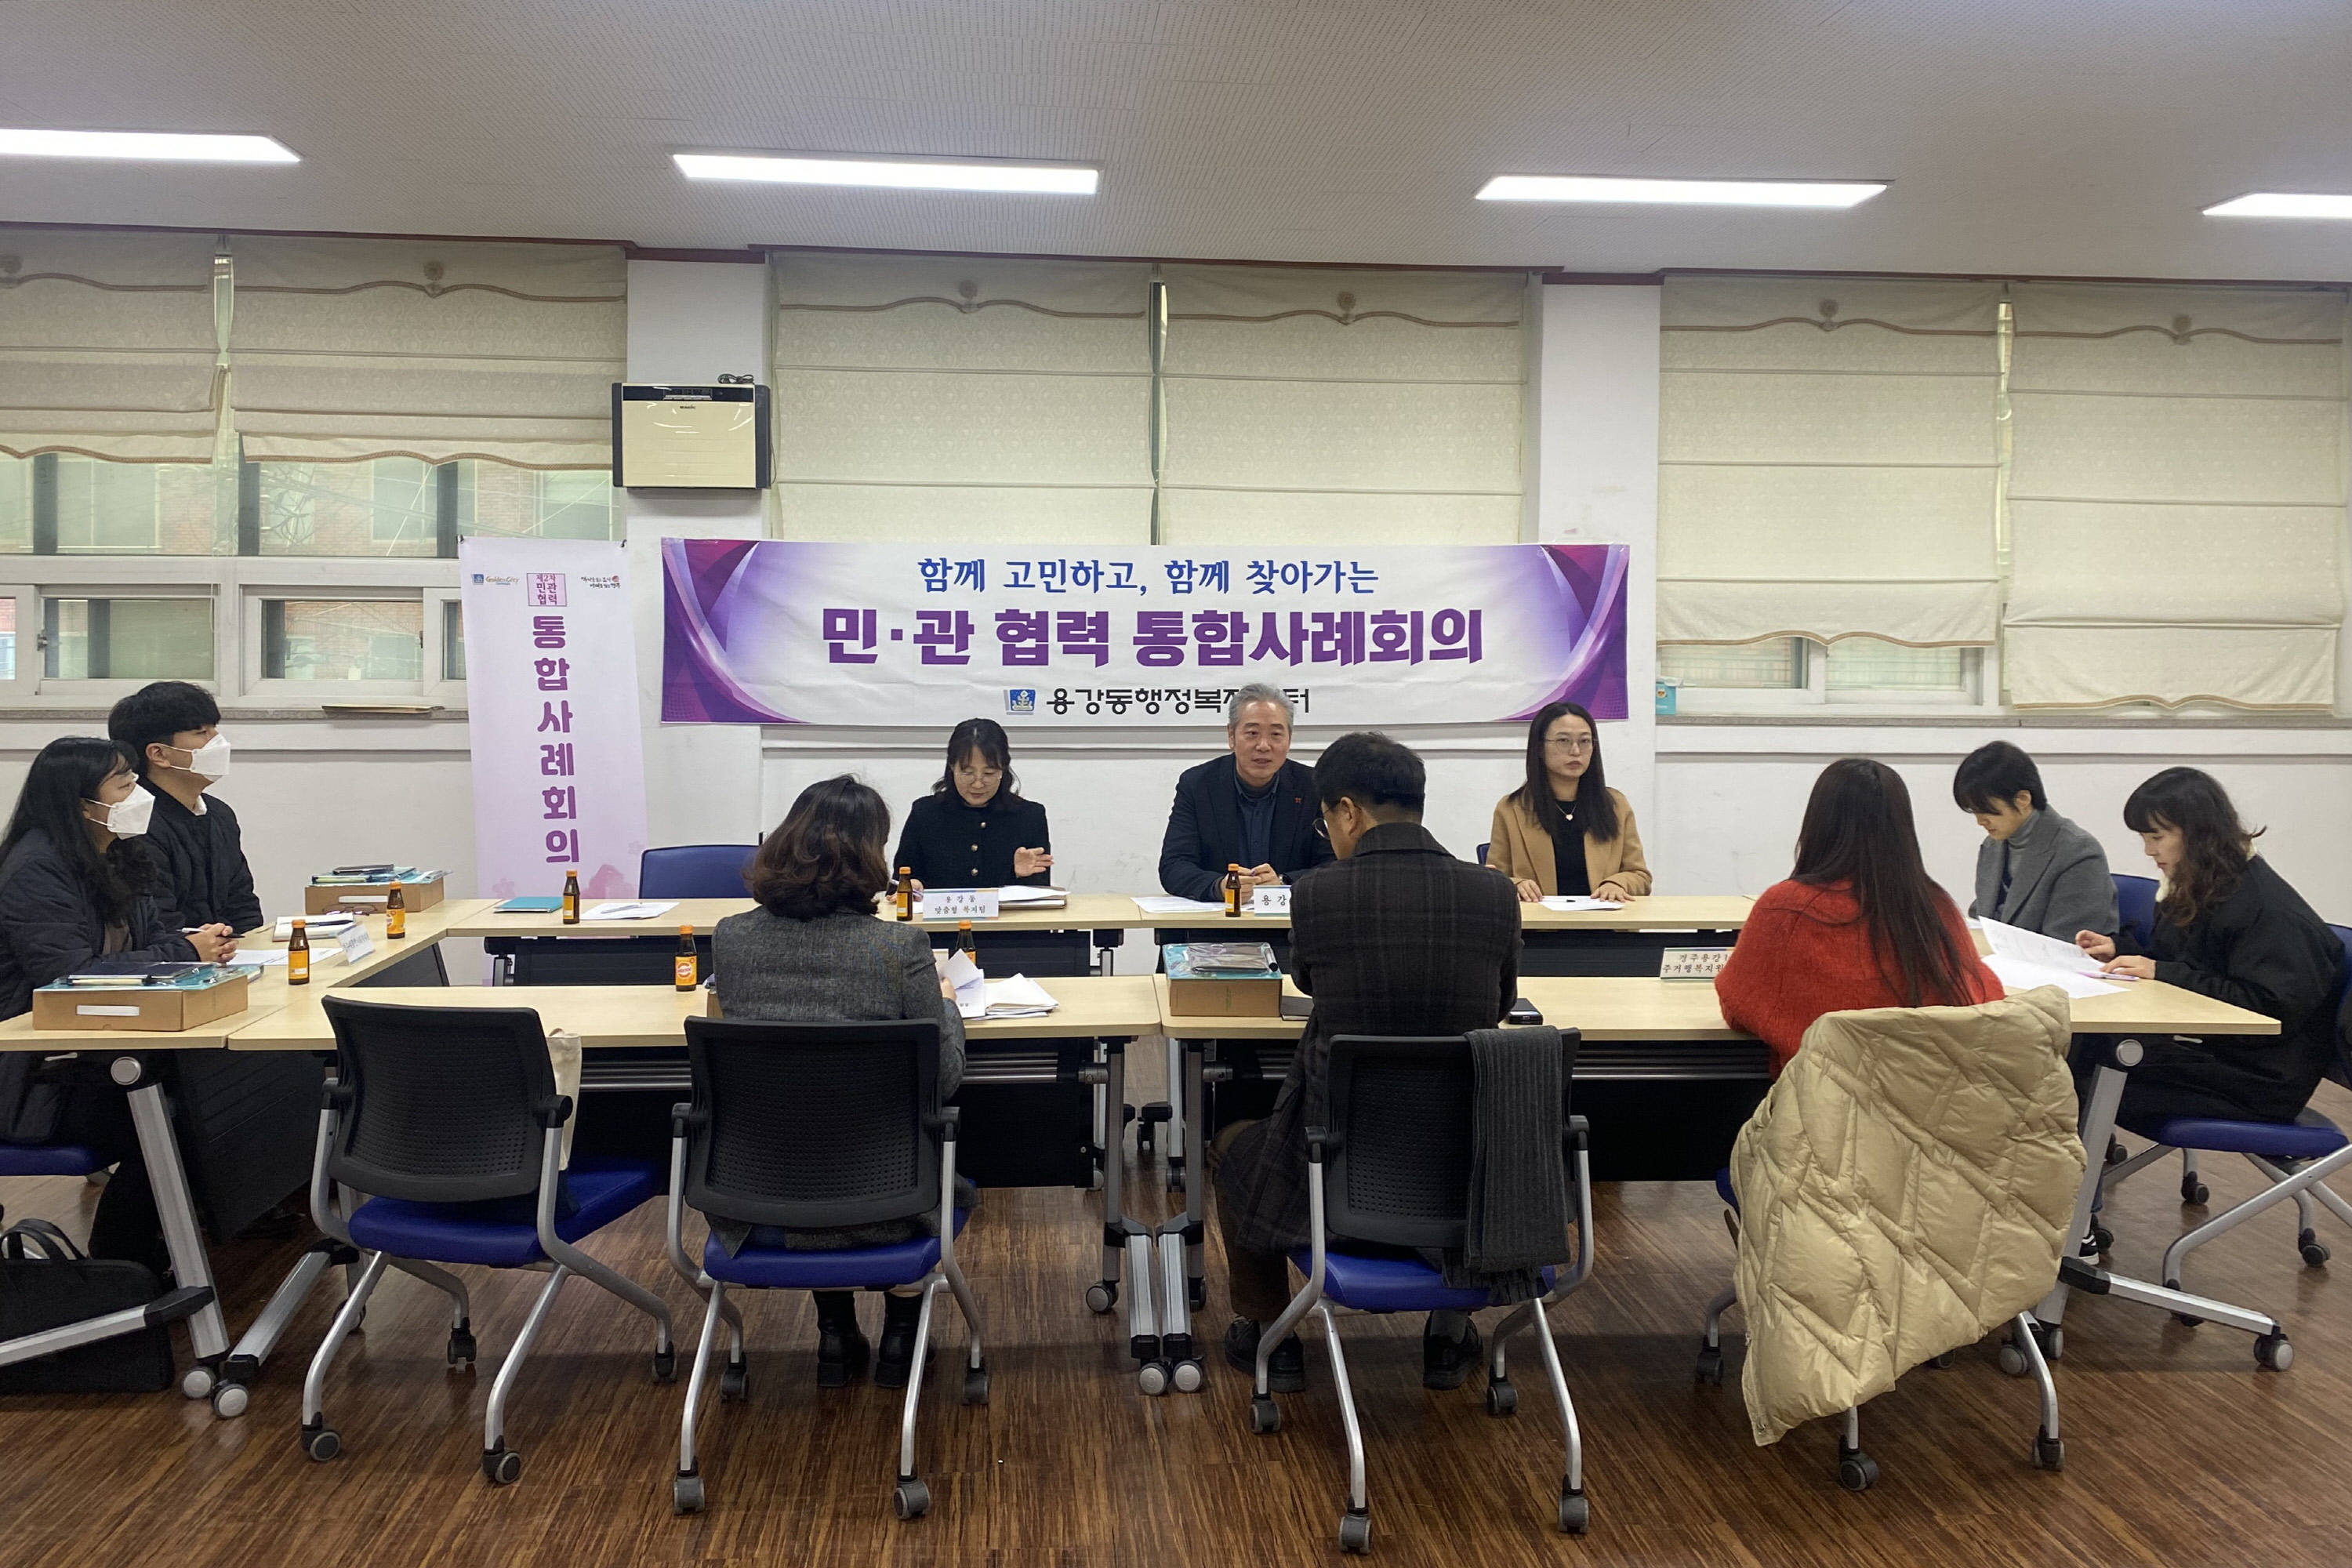 지난 19일 용강동 행정복지센터에서 화재 피해 세대를 지원하기 위한 제2차 민·관 협력 통합사례회의를 개최했다.